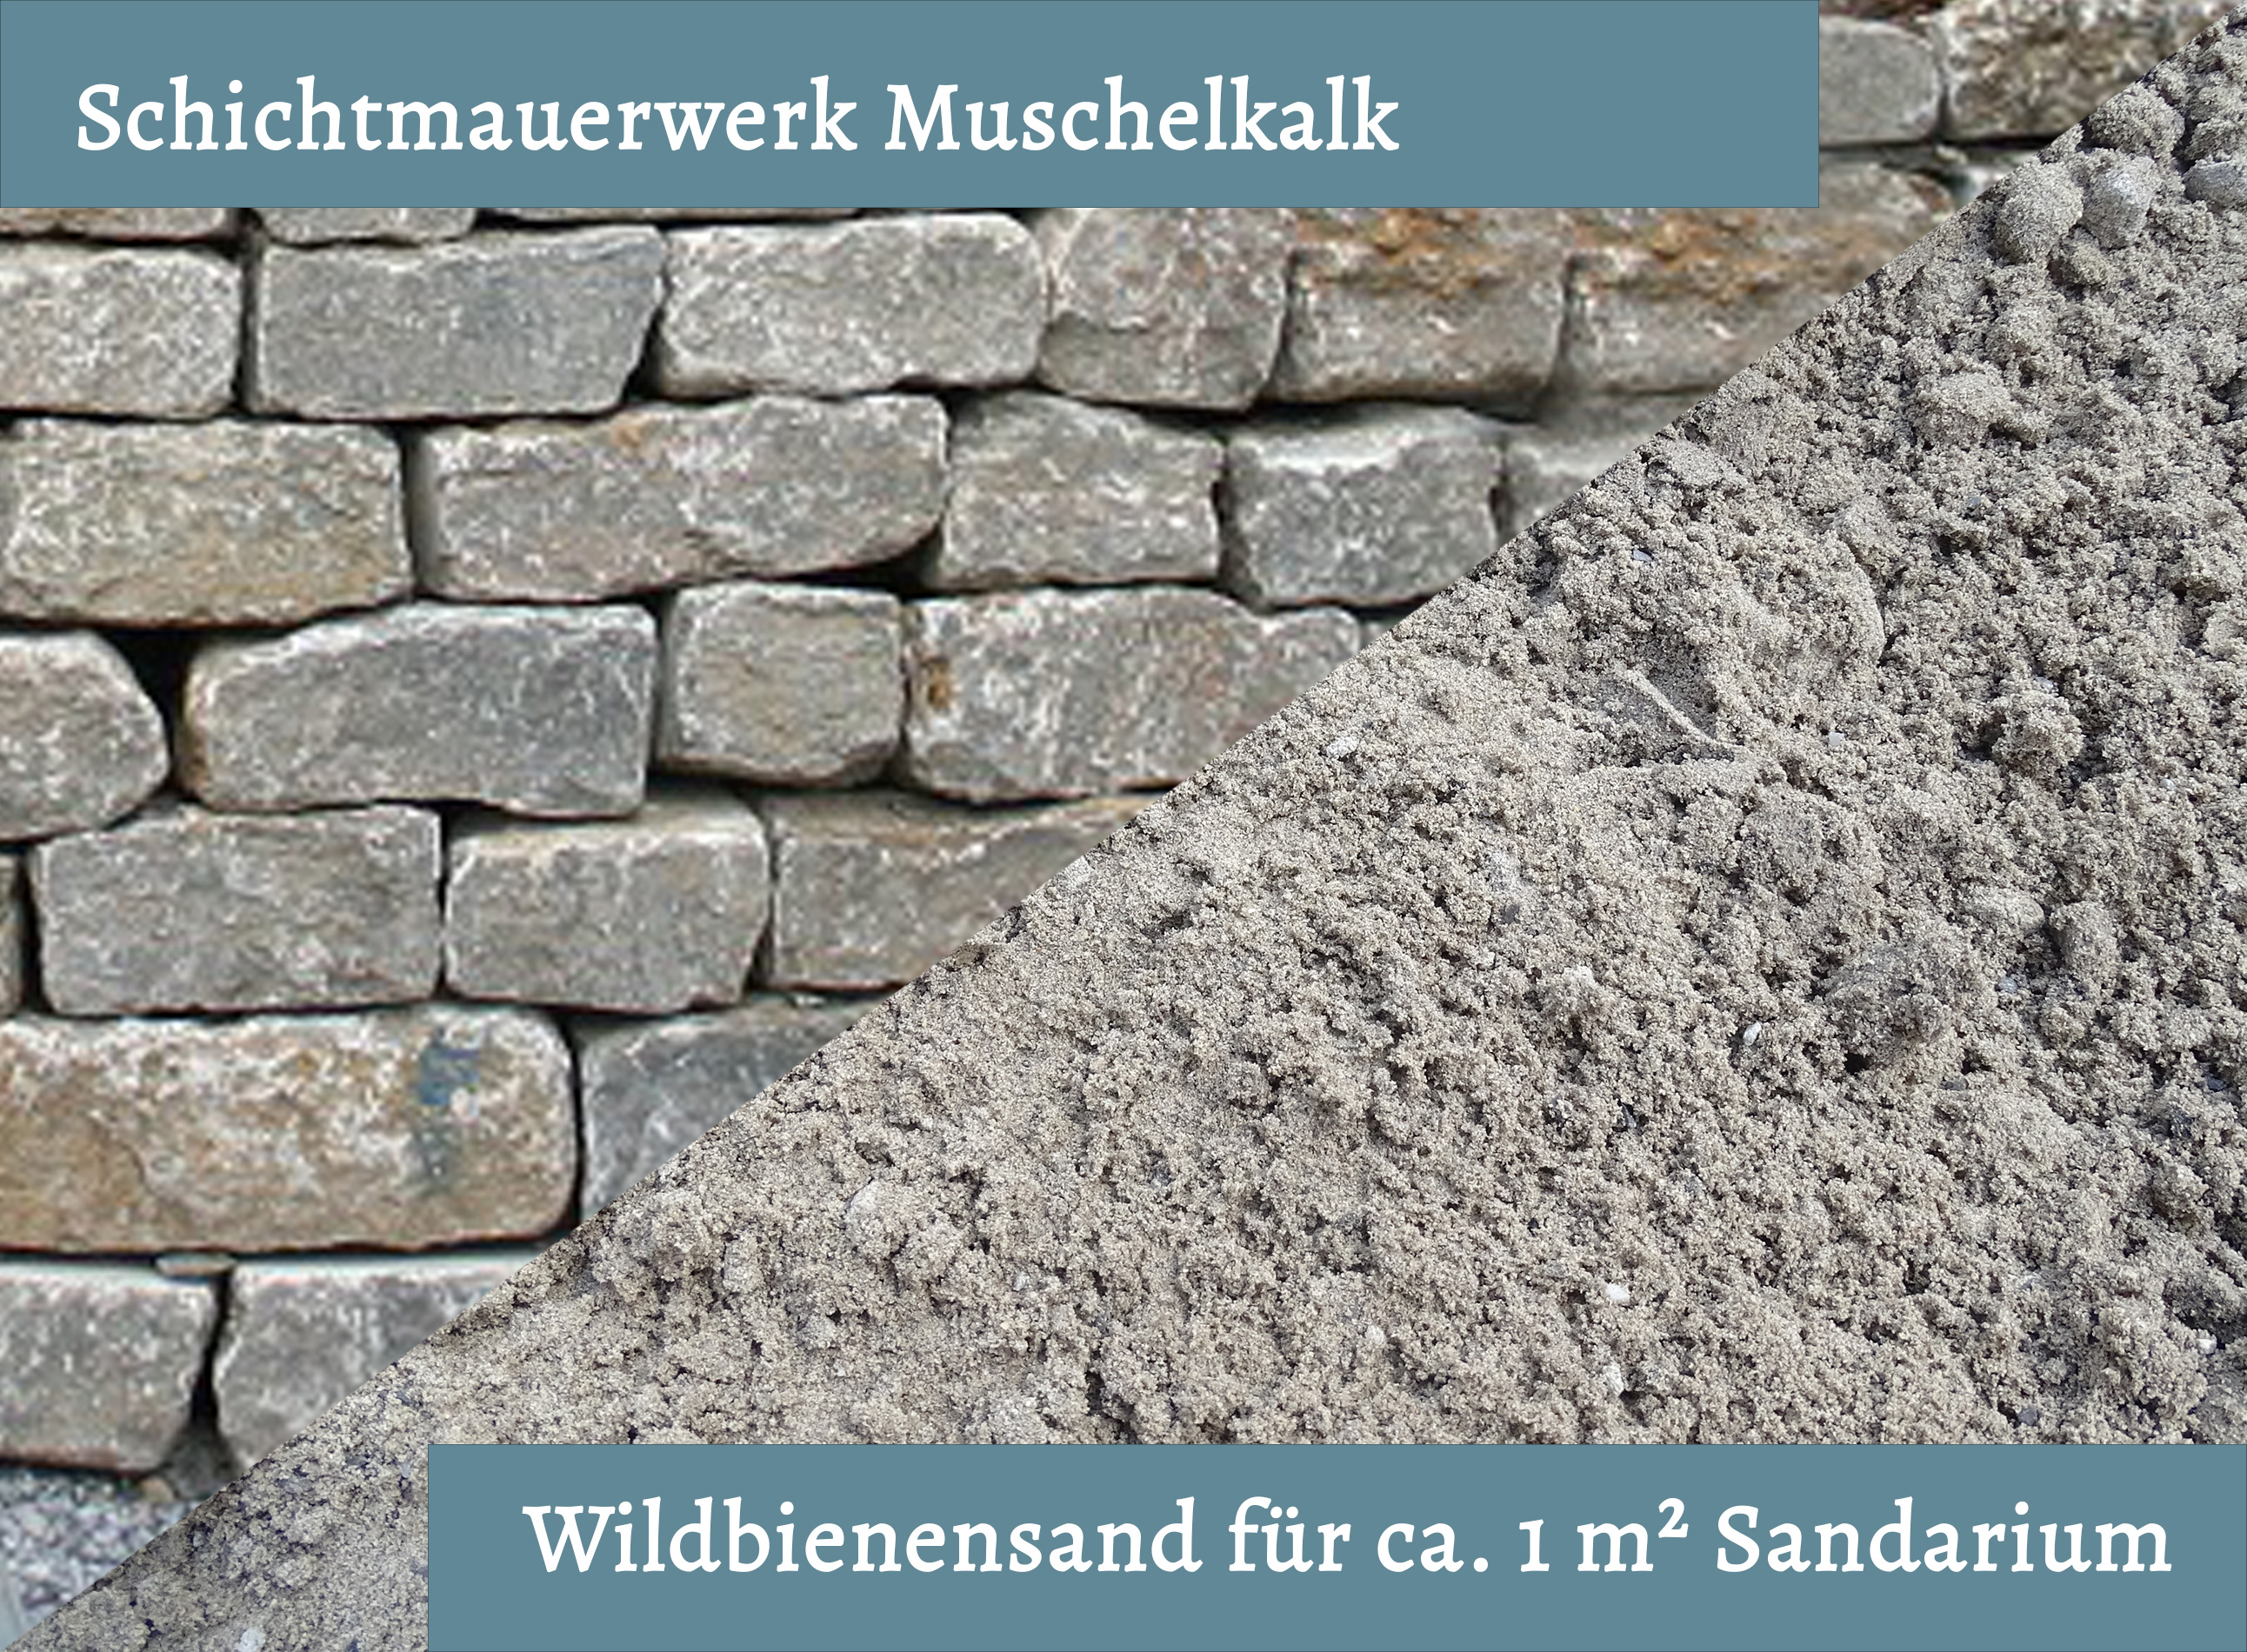 Wildbienensand mit Schichtmauer Muschelkalk für Sandarium 1,0 m²